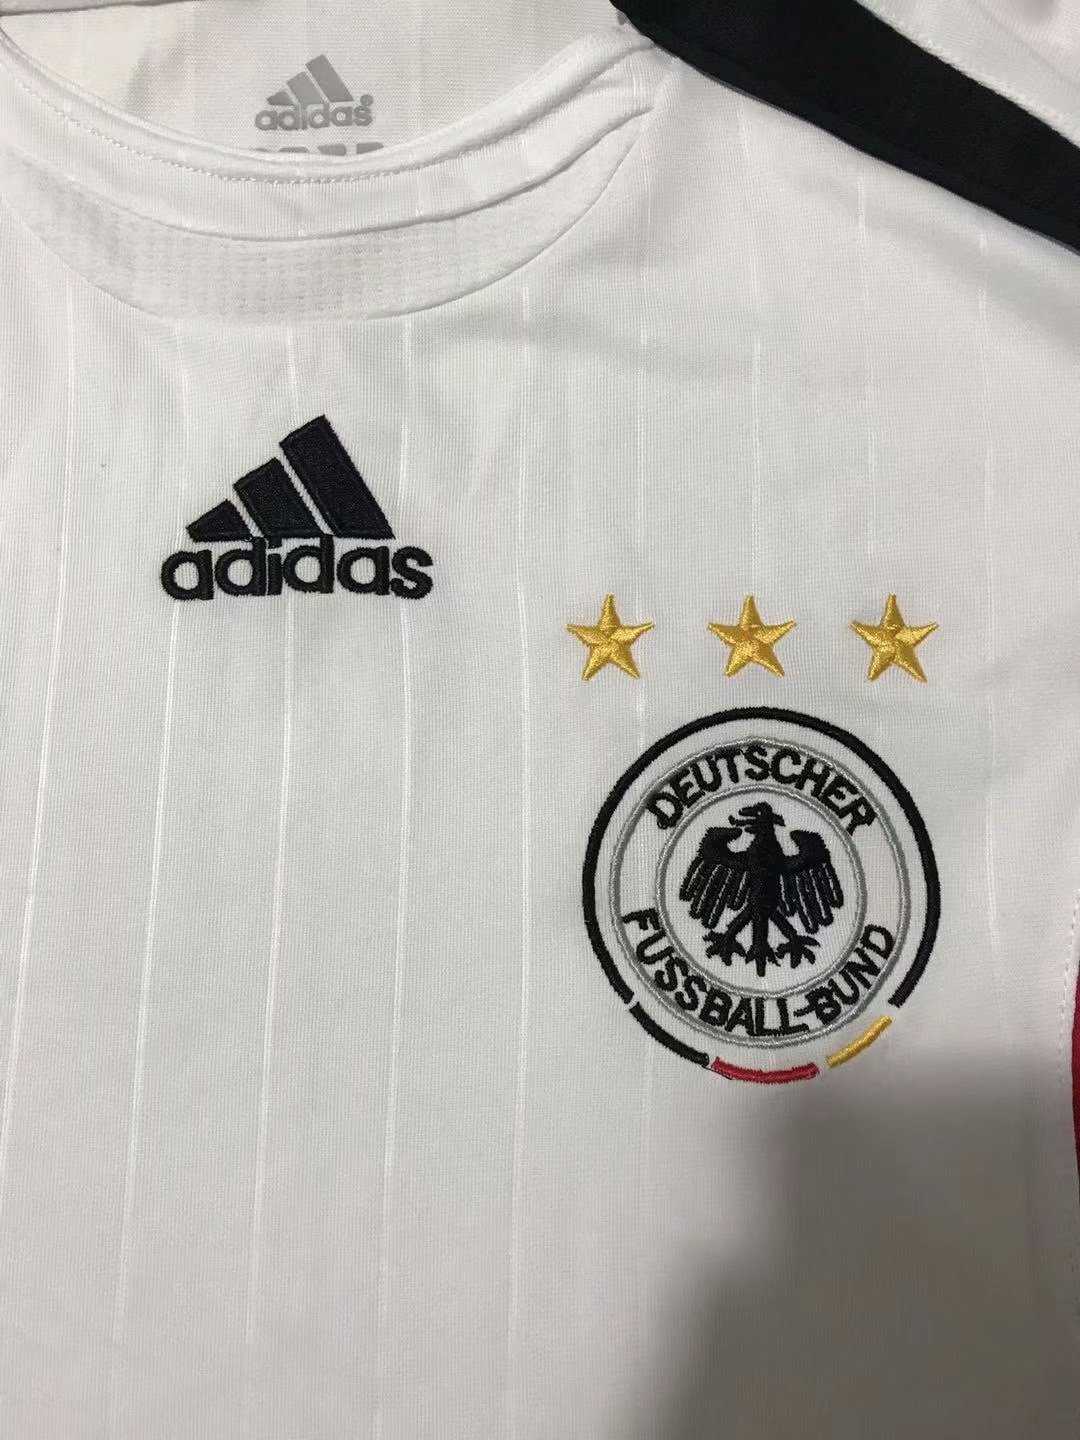 2006 Germany National Team Retro Home Mens Soccer Jersey Replica 